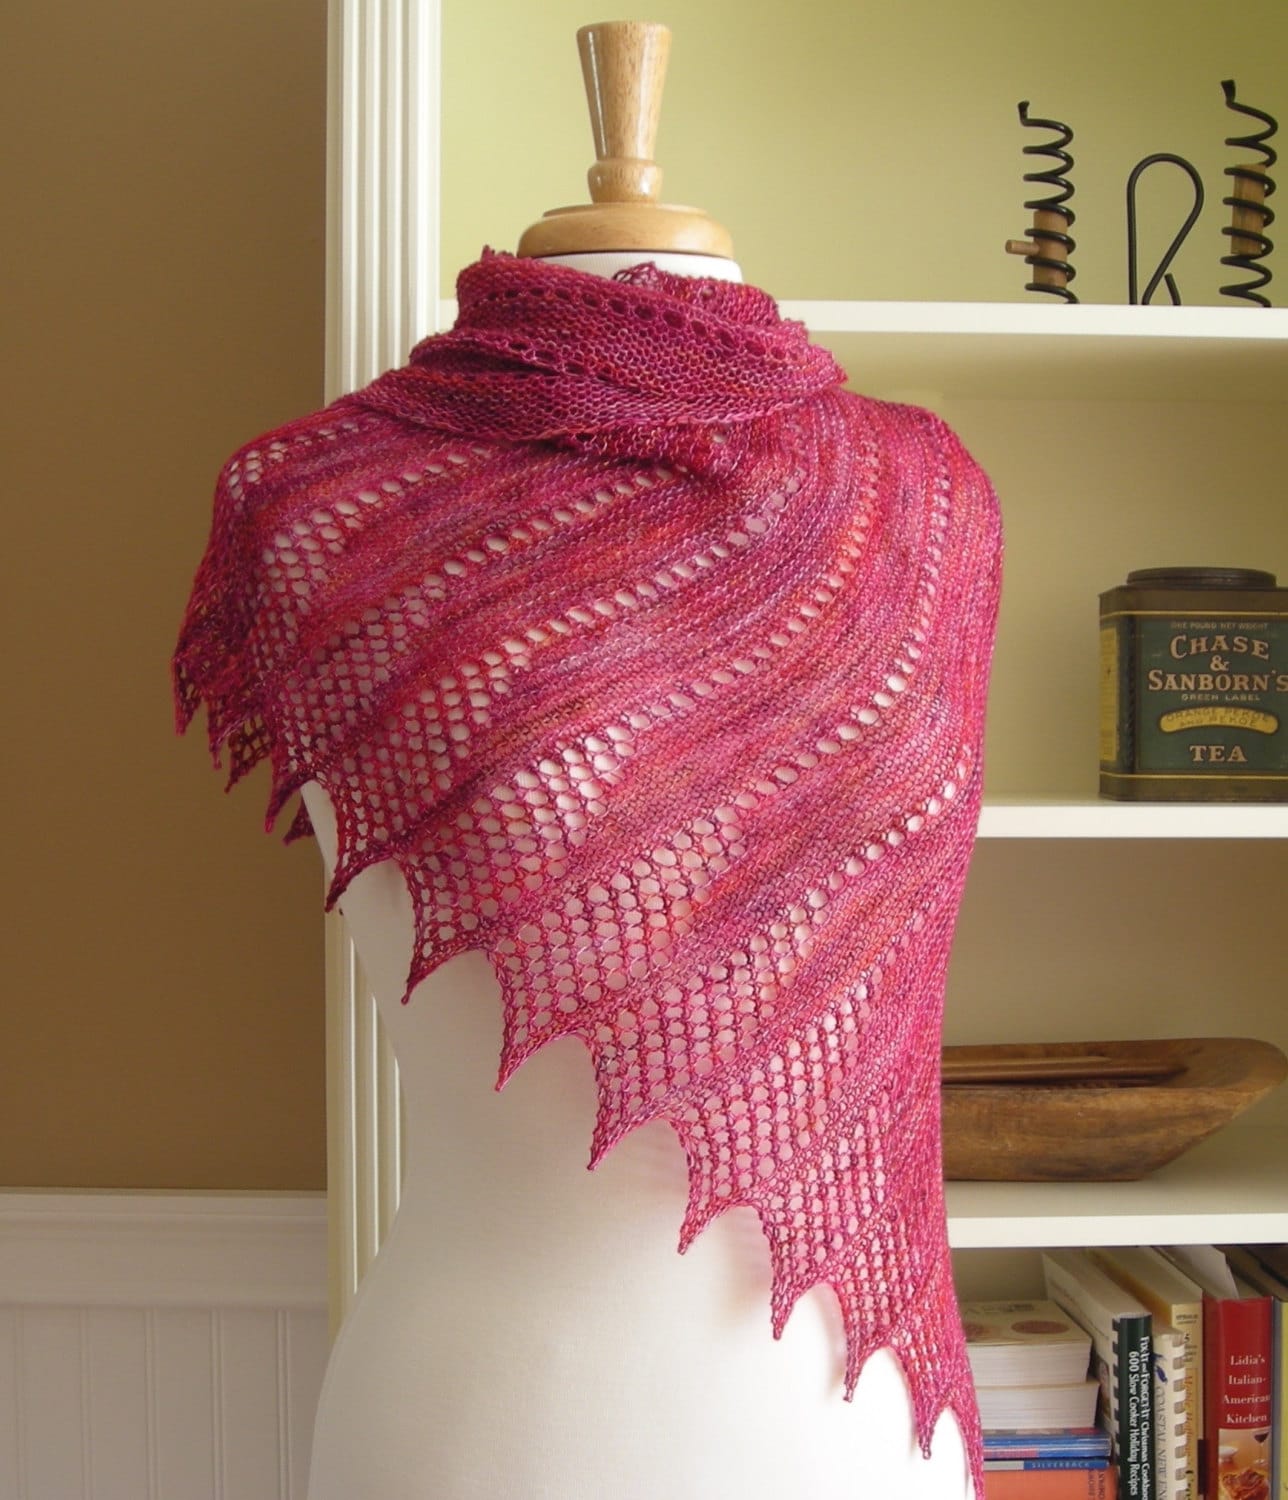 Lace Shawl Knitting Pattern PDF - Mistral Shawl ...